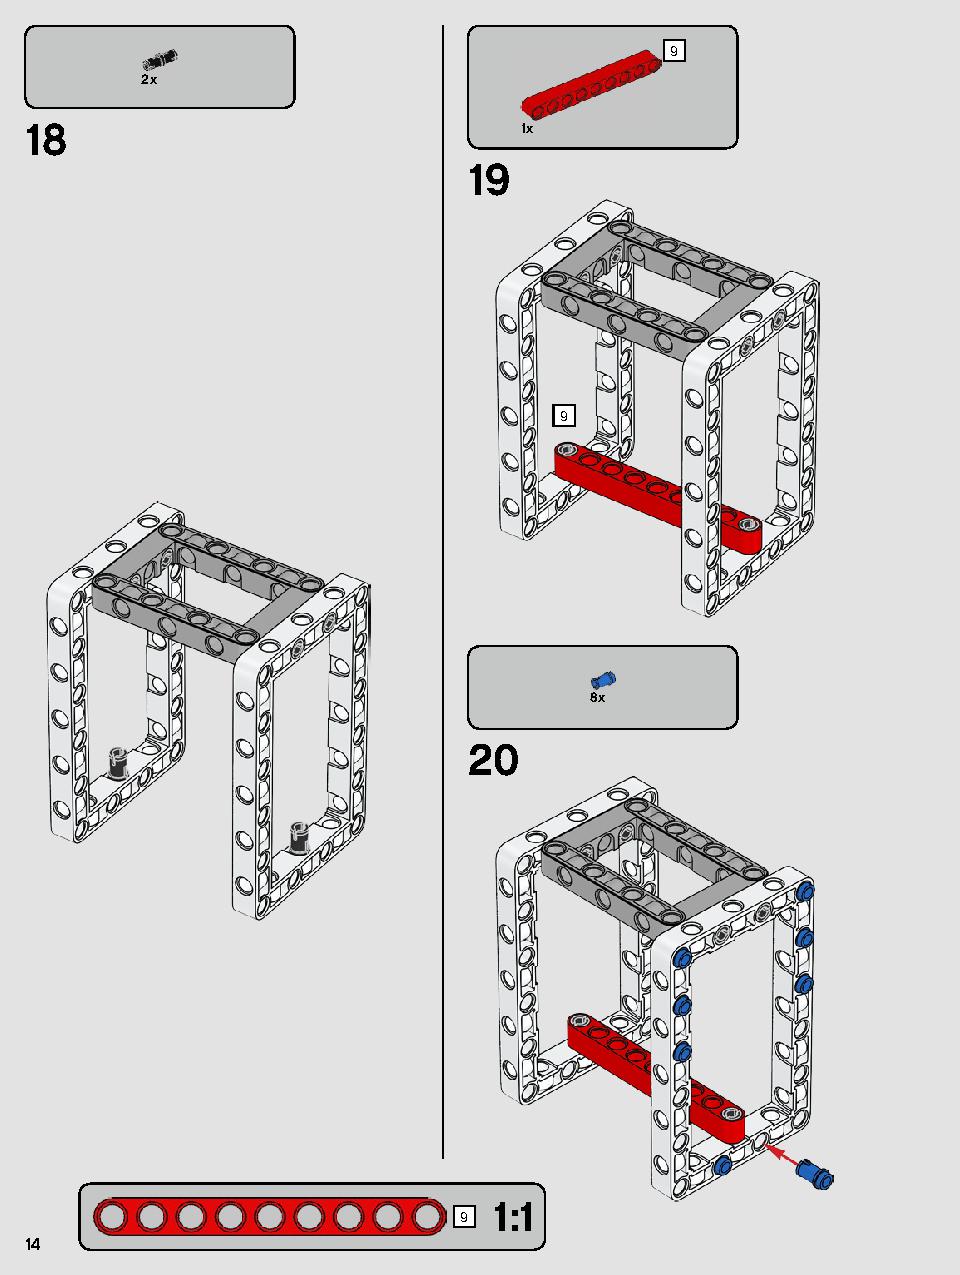 ヨーダ™ 75255 レゴの商品情報 レゴの説明書・組立方法 14 page